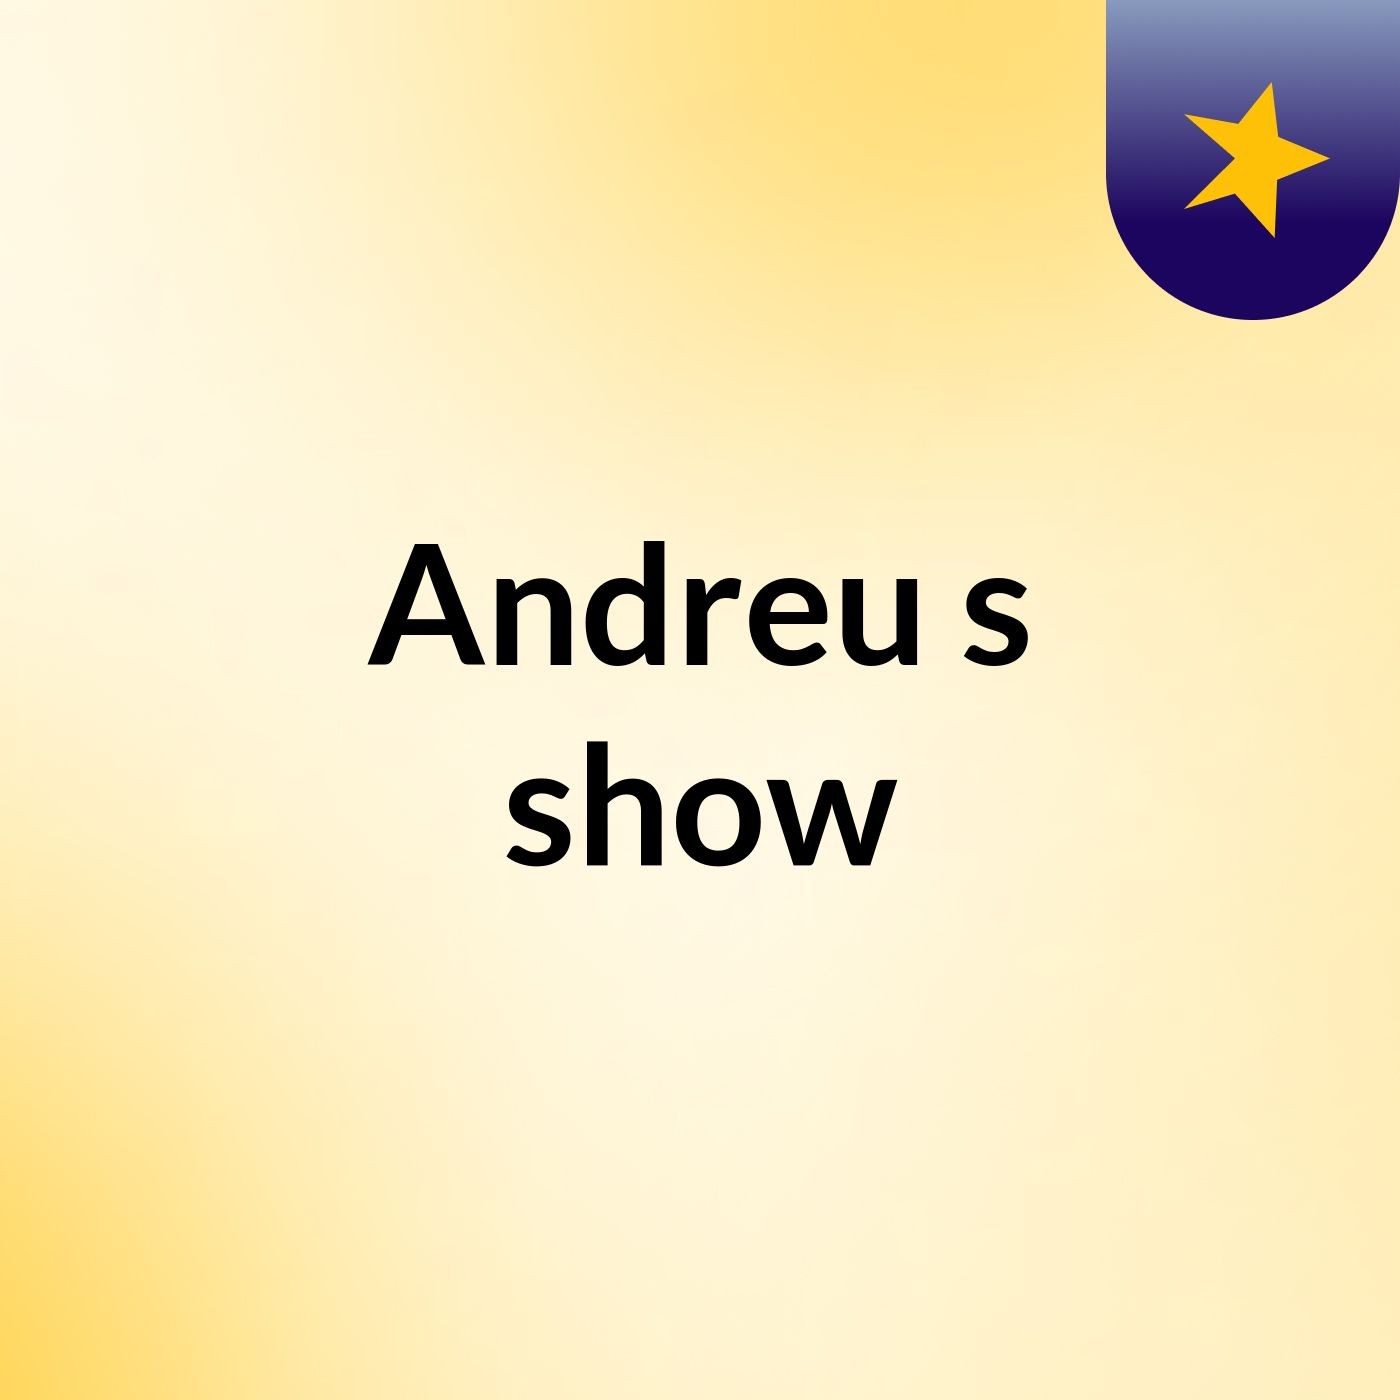 Andreu's show